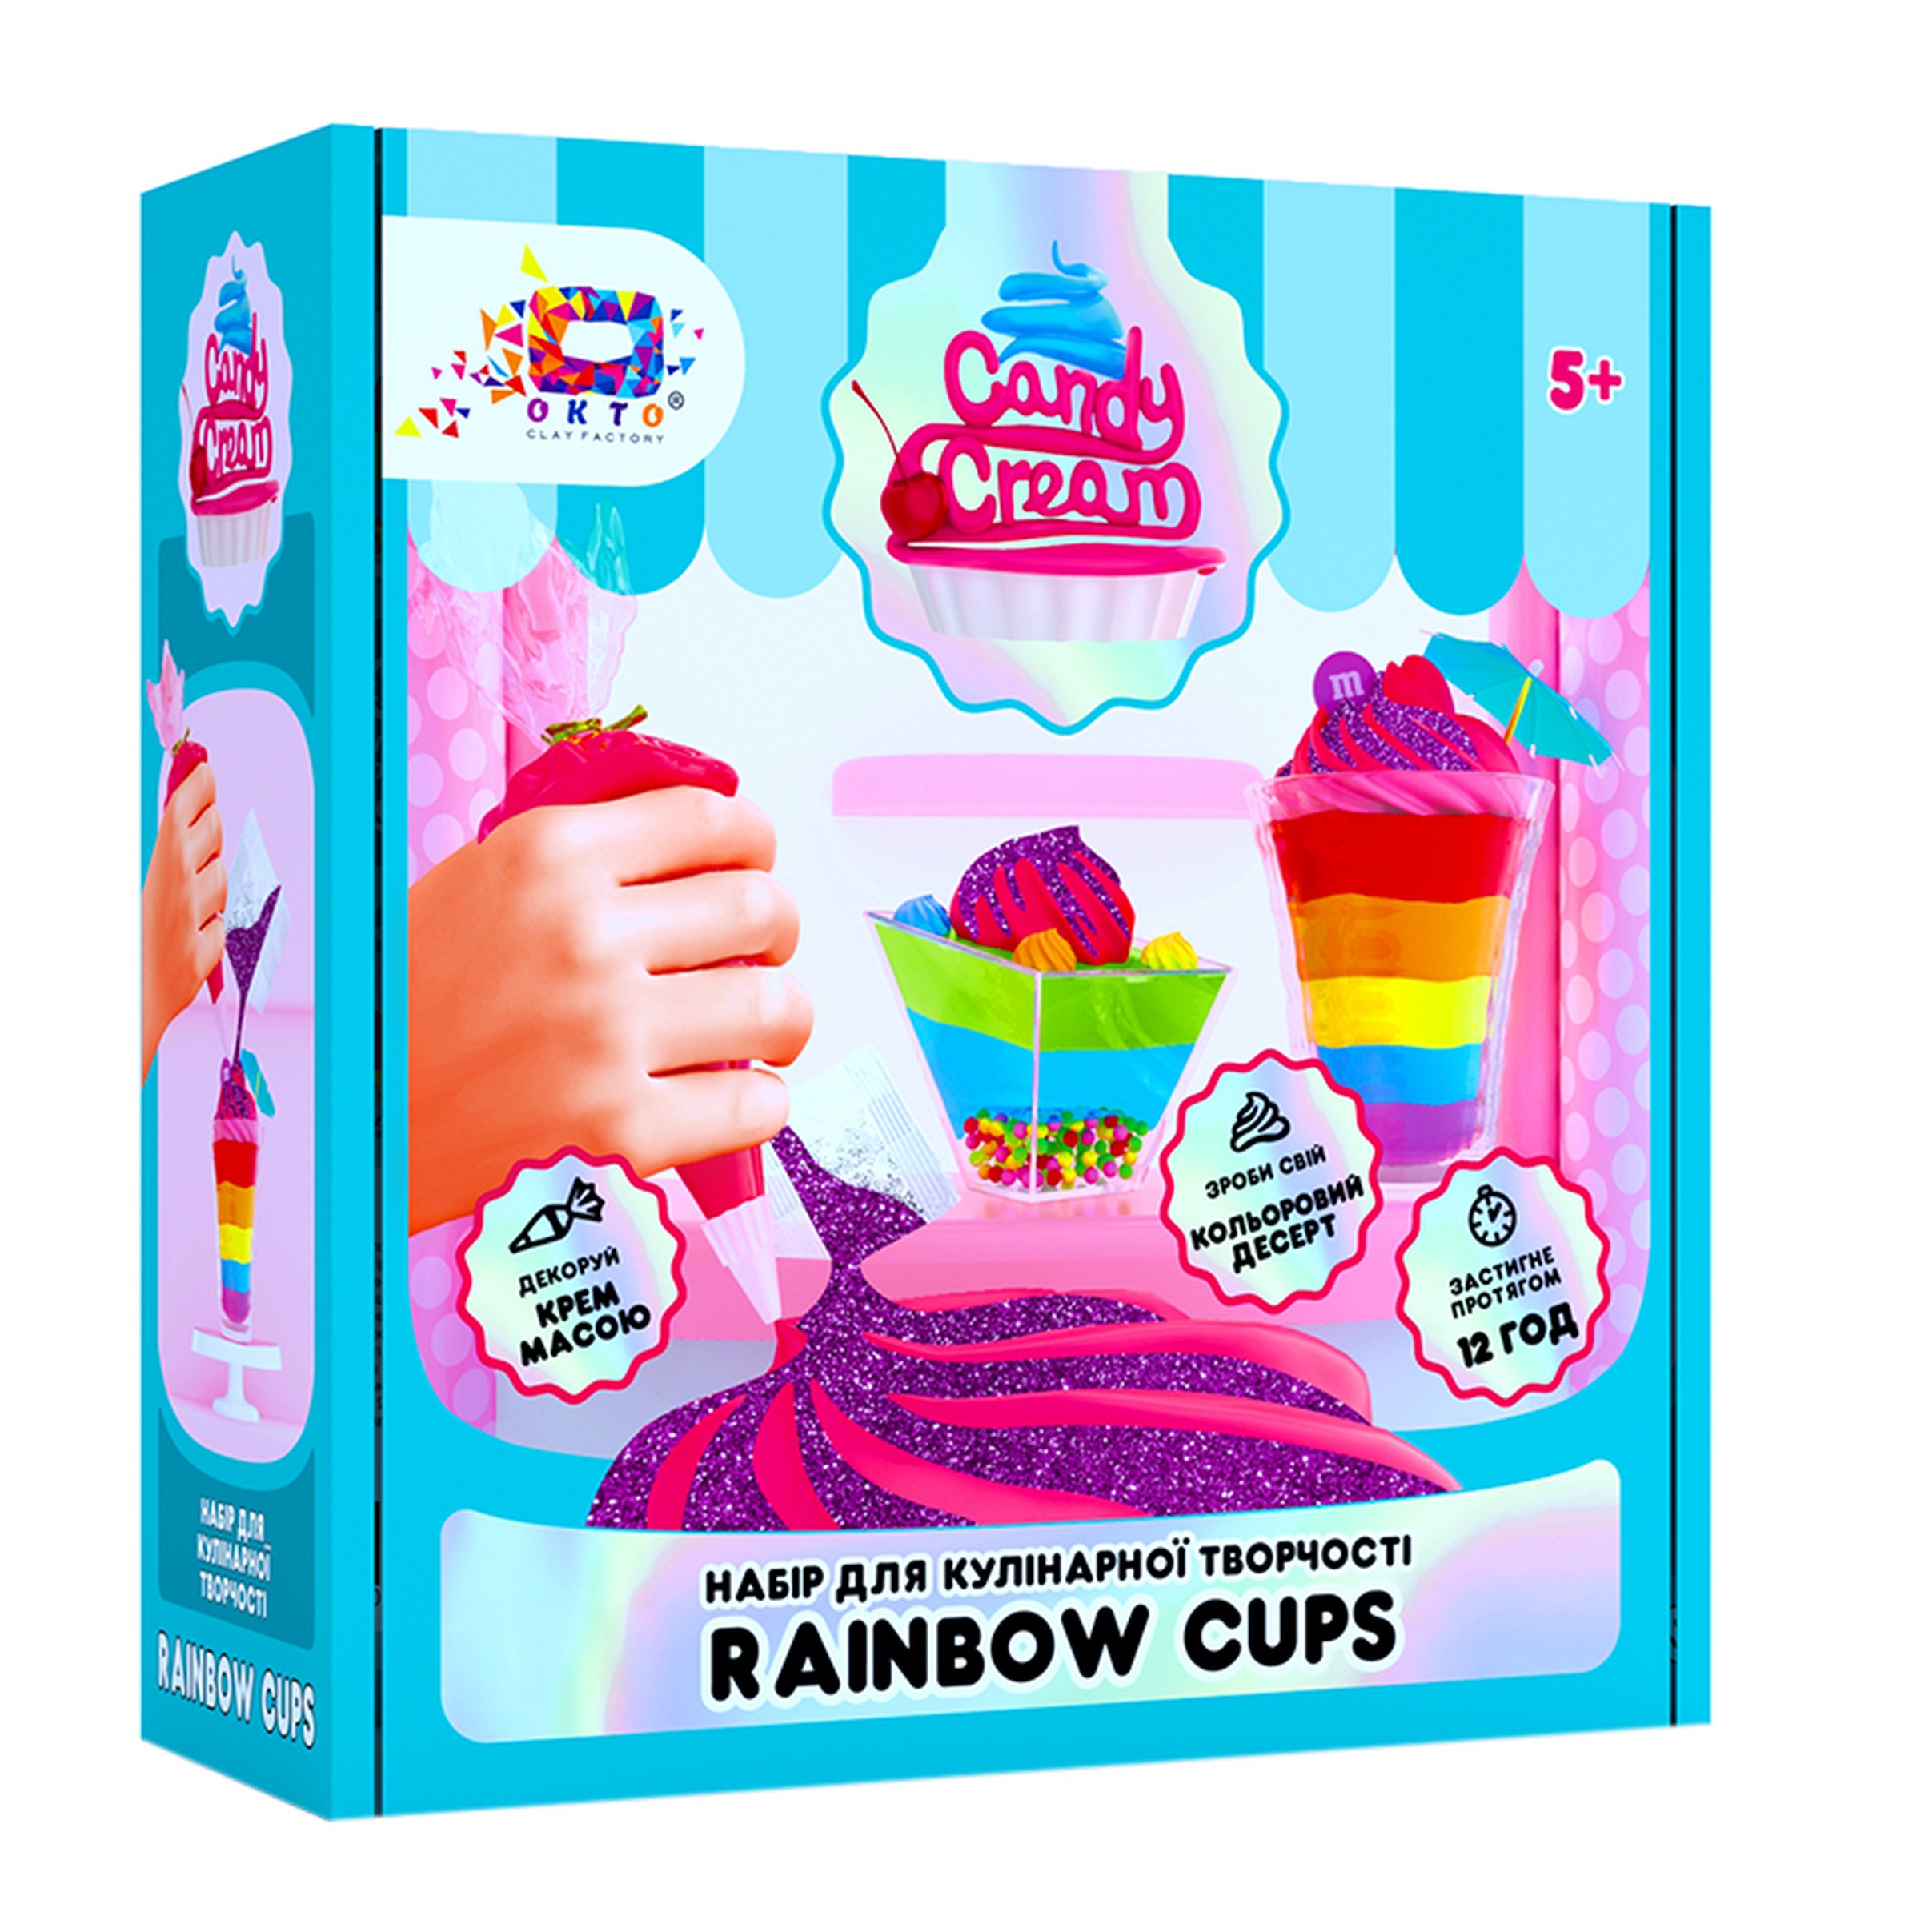 Knete Modellierung Knetmasse Kinder Spielzeug Geschenk Idee Regenbogenbecher